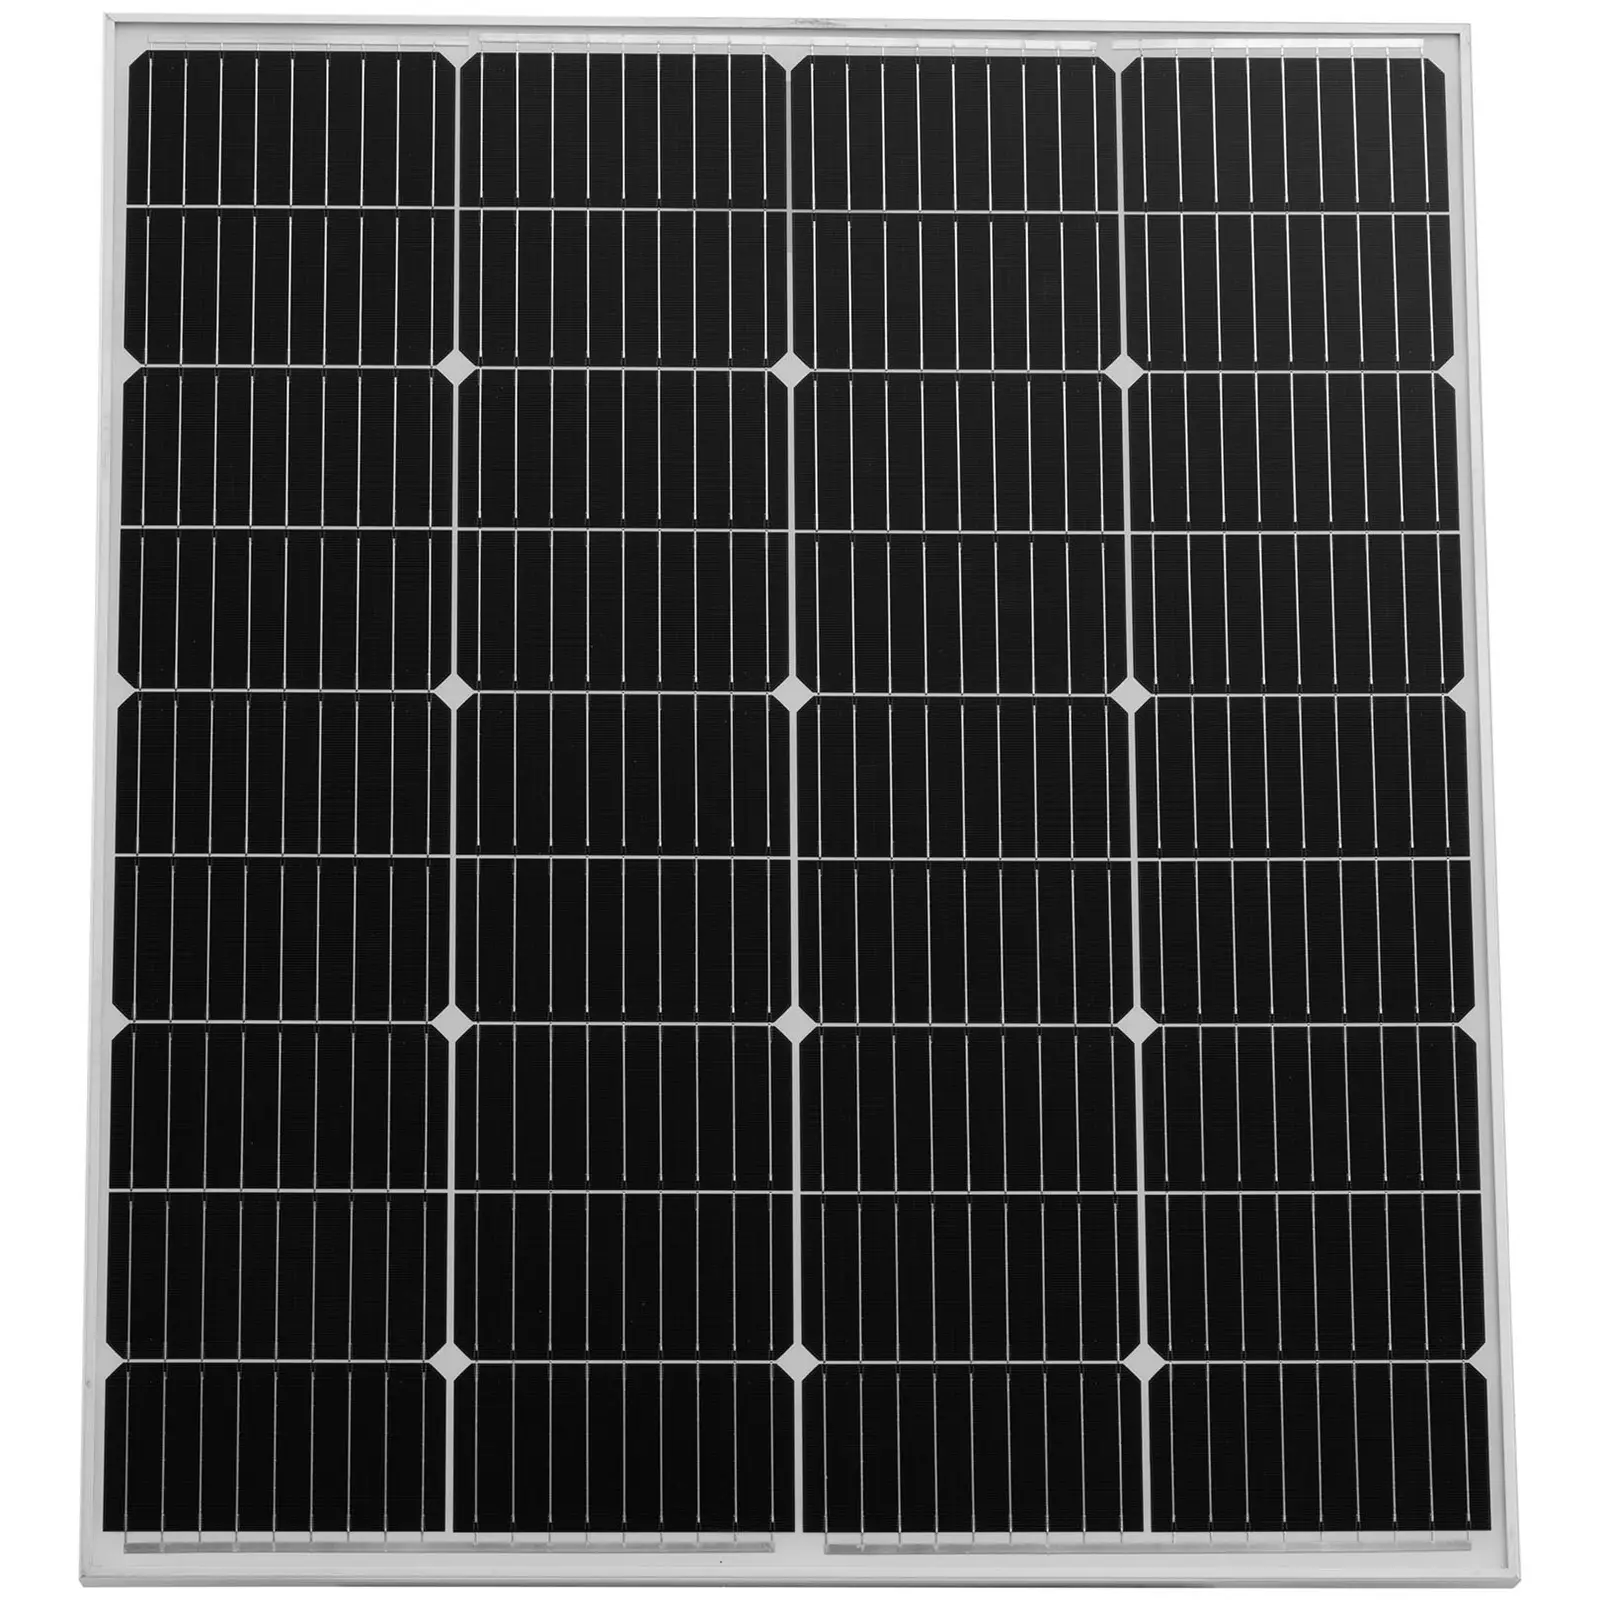 Monokrystalický solární panel - 100 W - 22.46 V - s bypass diodou